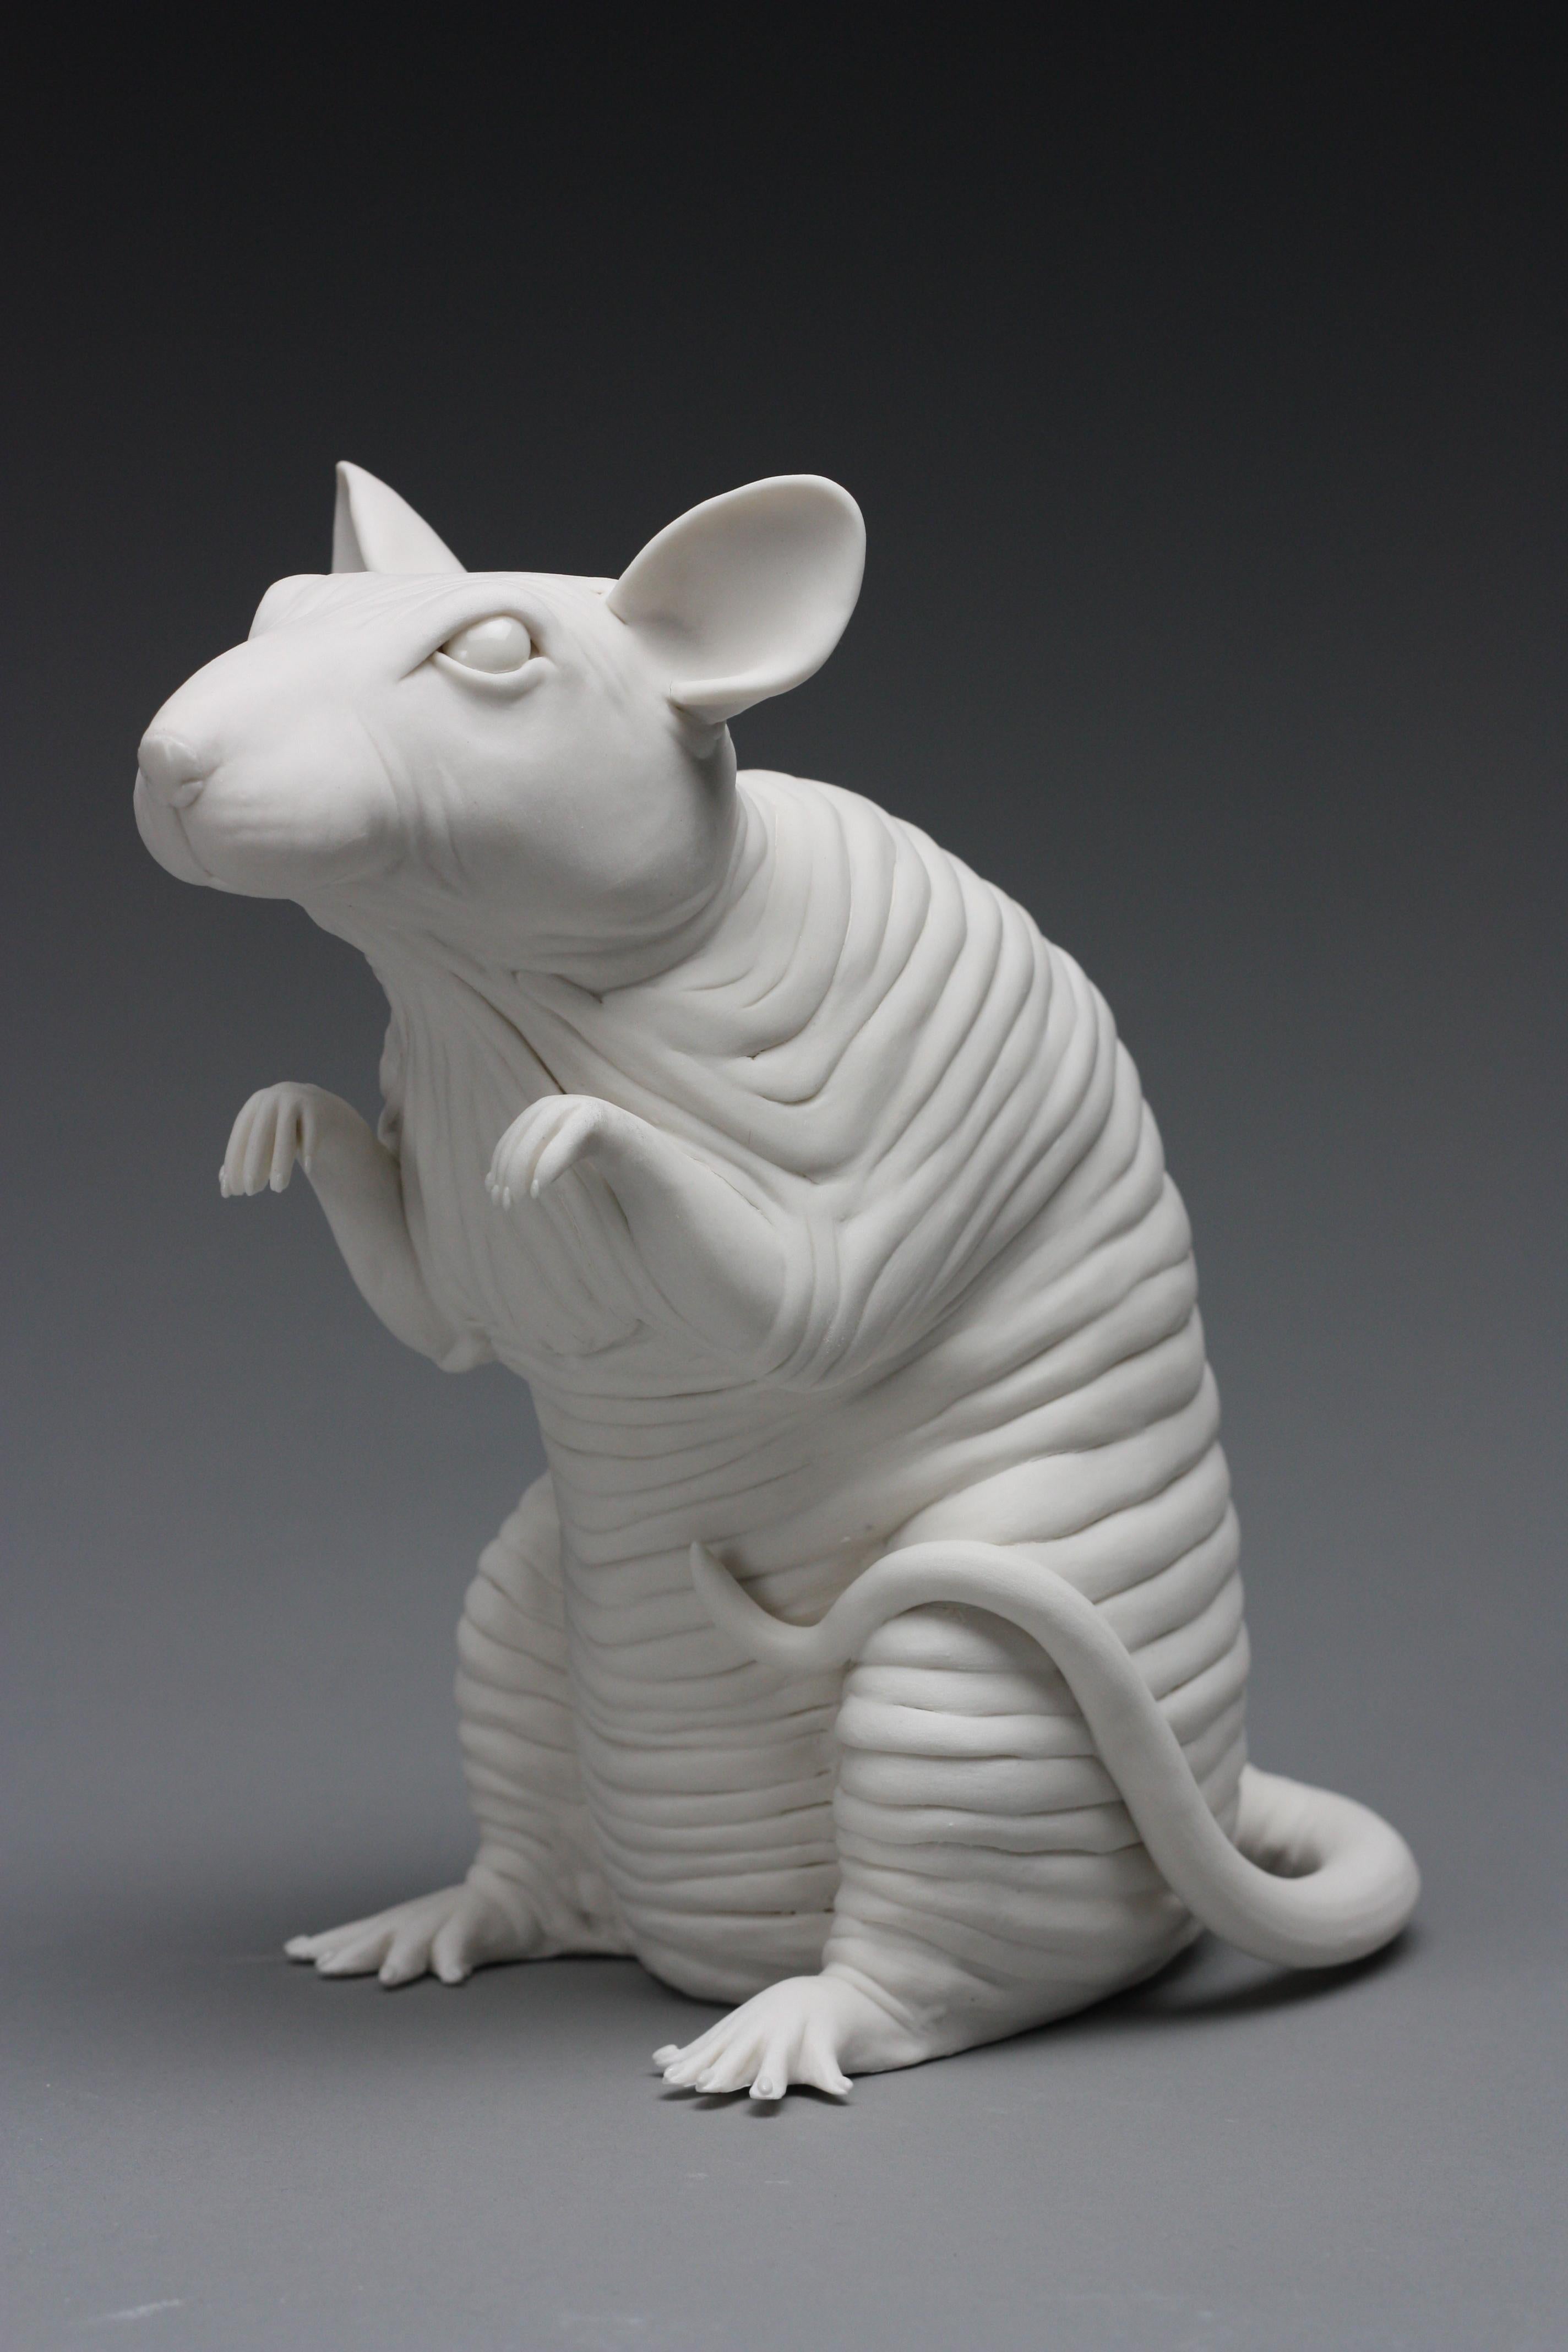 Diese exquisite haarlose Ratten-Skulptur aus Porzellan wurde von der New Yorker Künstlerin Bethany Krull von Hand und ohne Verwendung von Gussformen hergestellt.  Das superweiße Porzellan ist auf einem System von Armaturen fest aufgebaut.  Sobald